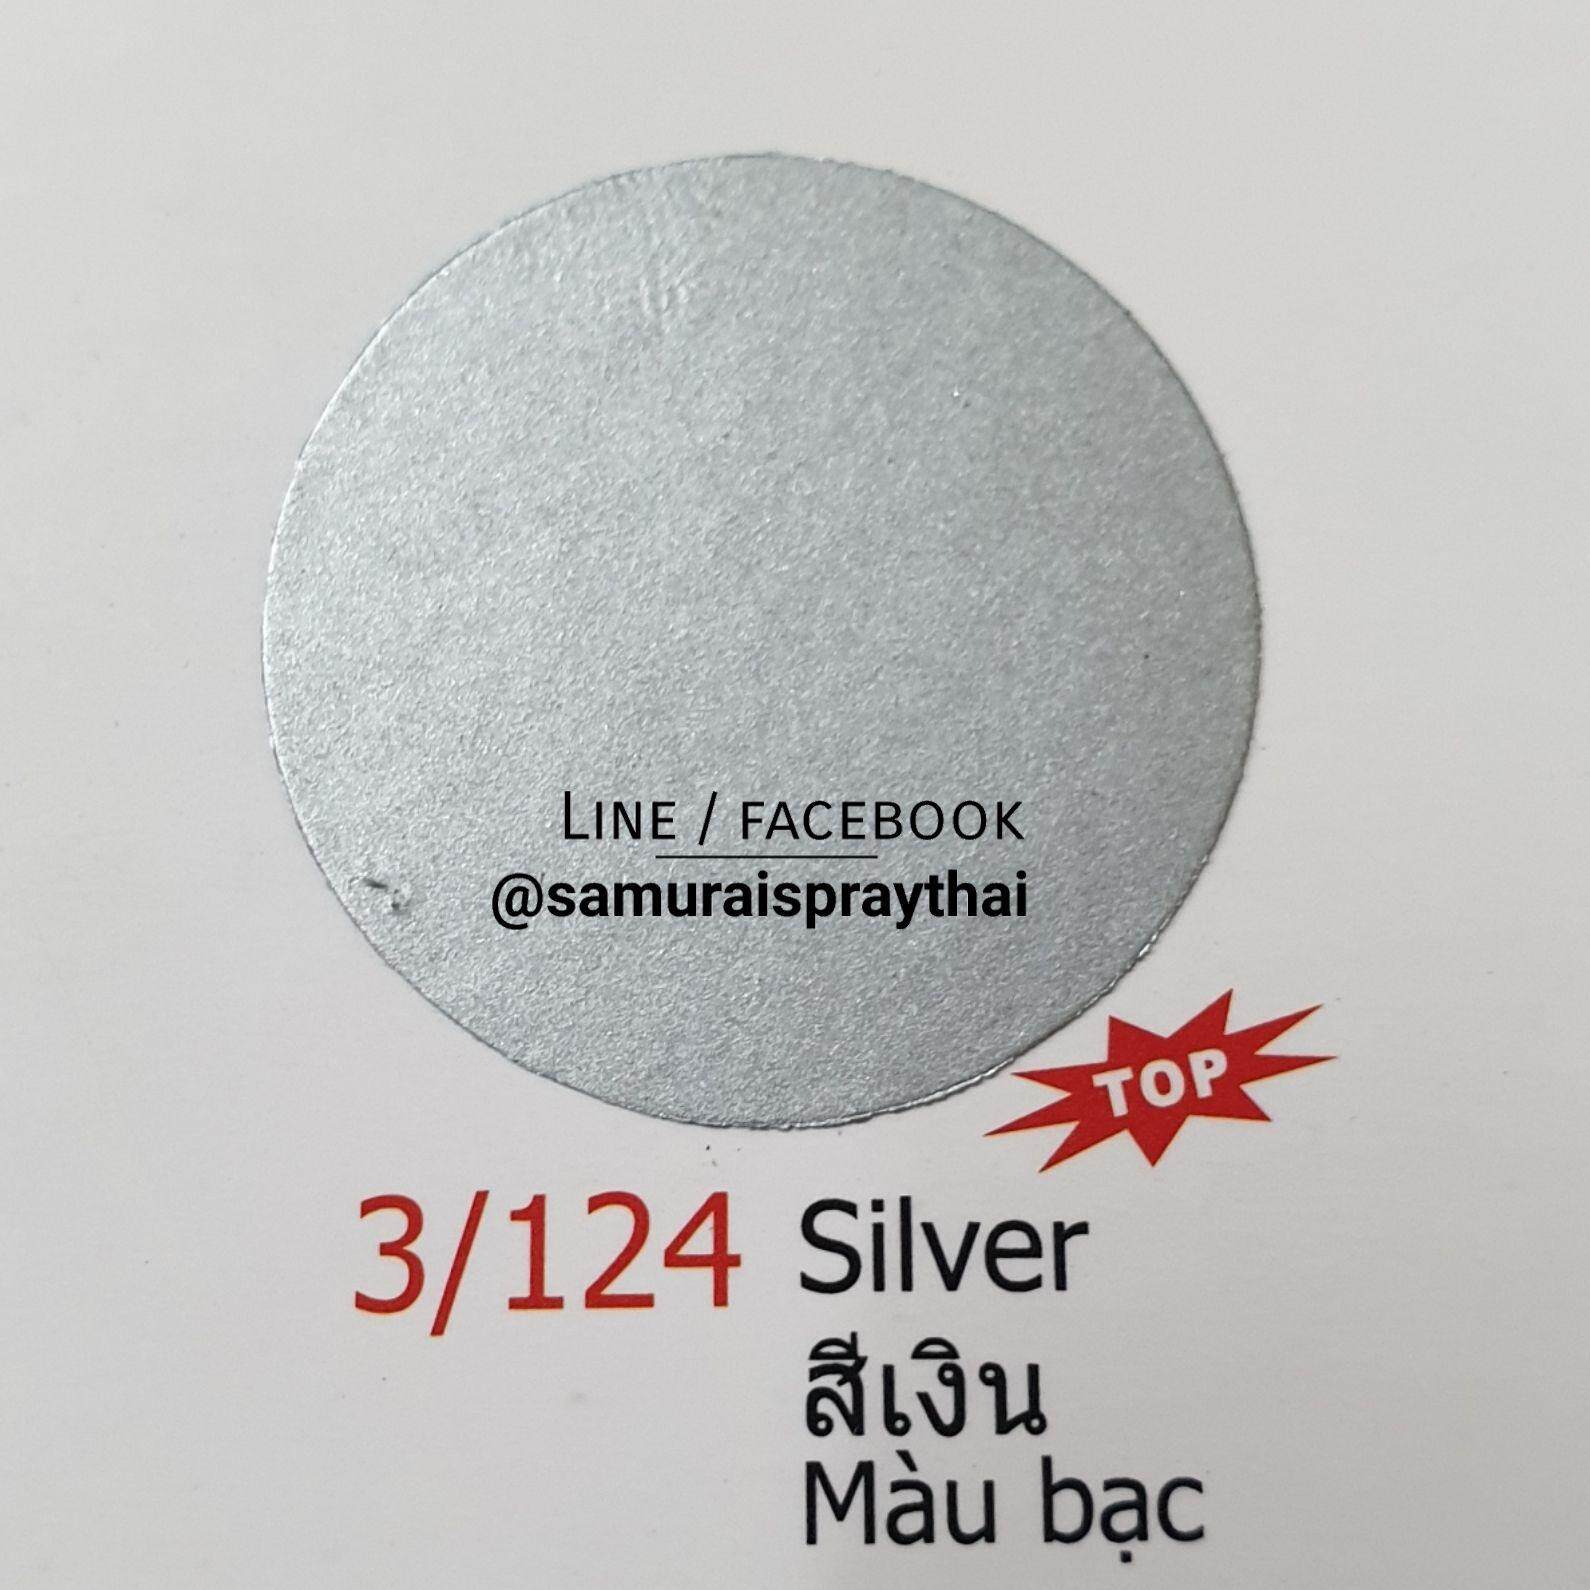 SAMURAI สีสเปรย์ซามูไร สีเงิน เบอร์ 3/124  Silver - 400ml